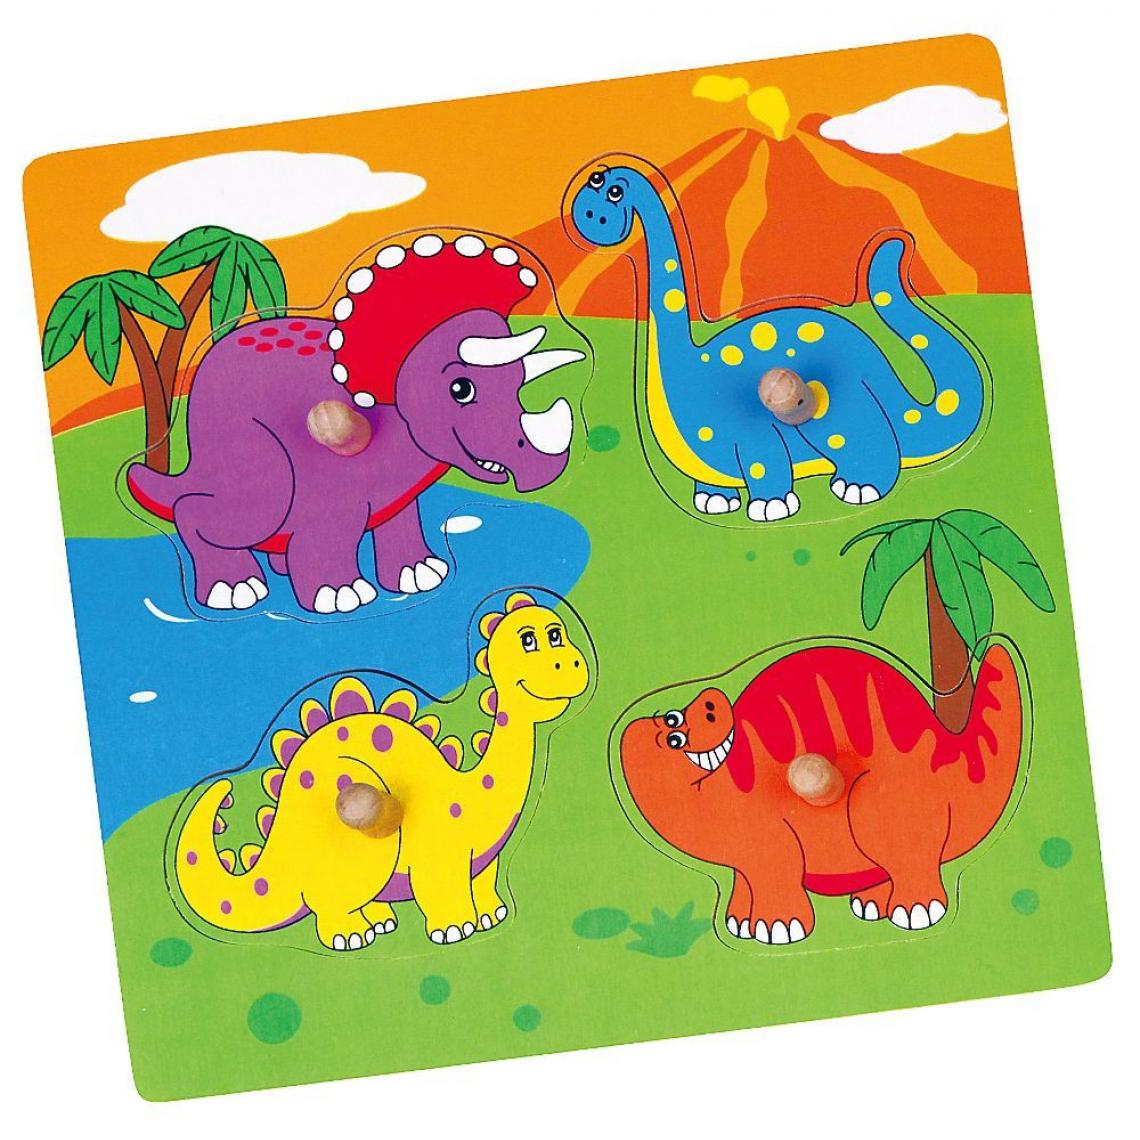 Hucoco - Puzzle Dinosaures jeu éducatif en bois bébé enfant 1an+ - Multicolore - Accessoires Puzzles